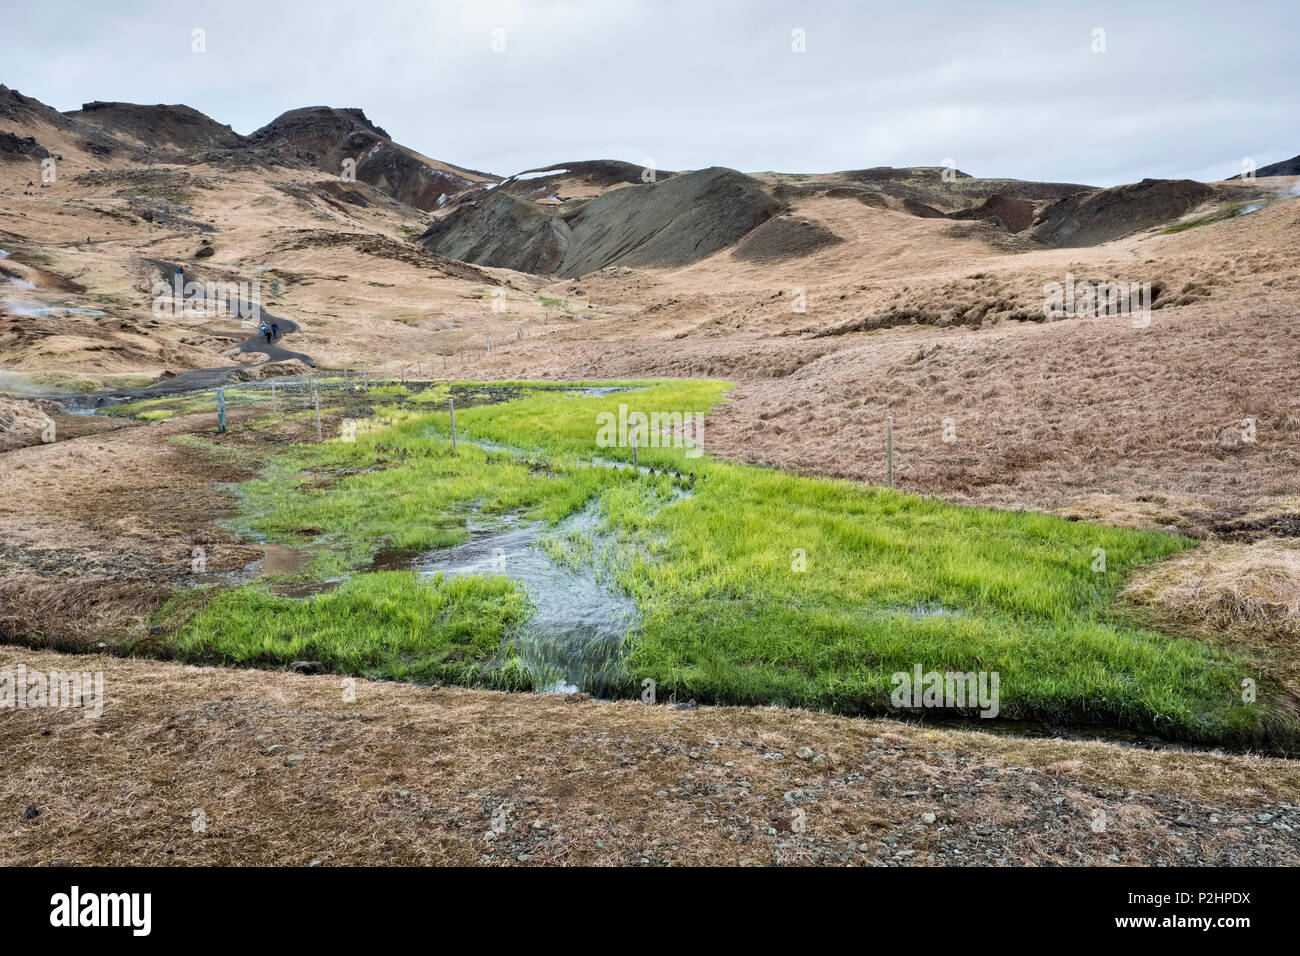 El sur de Islandia. El agua caliente de hot springs mantiene el crecimiento de hierba verde y exuberante en invierno, en la zona geotérmica altamente activa de Hveragerði Foto de stock